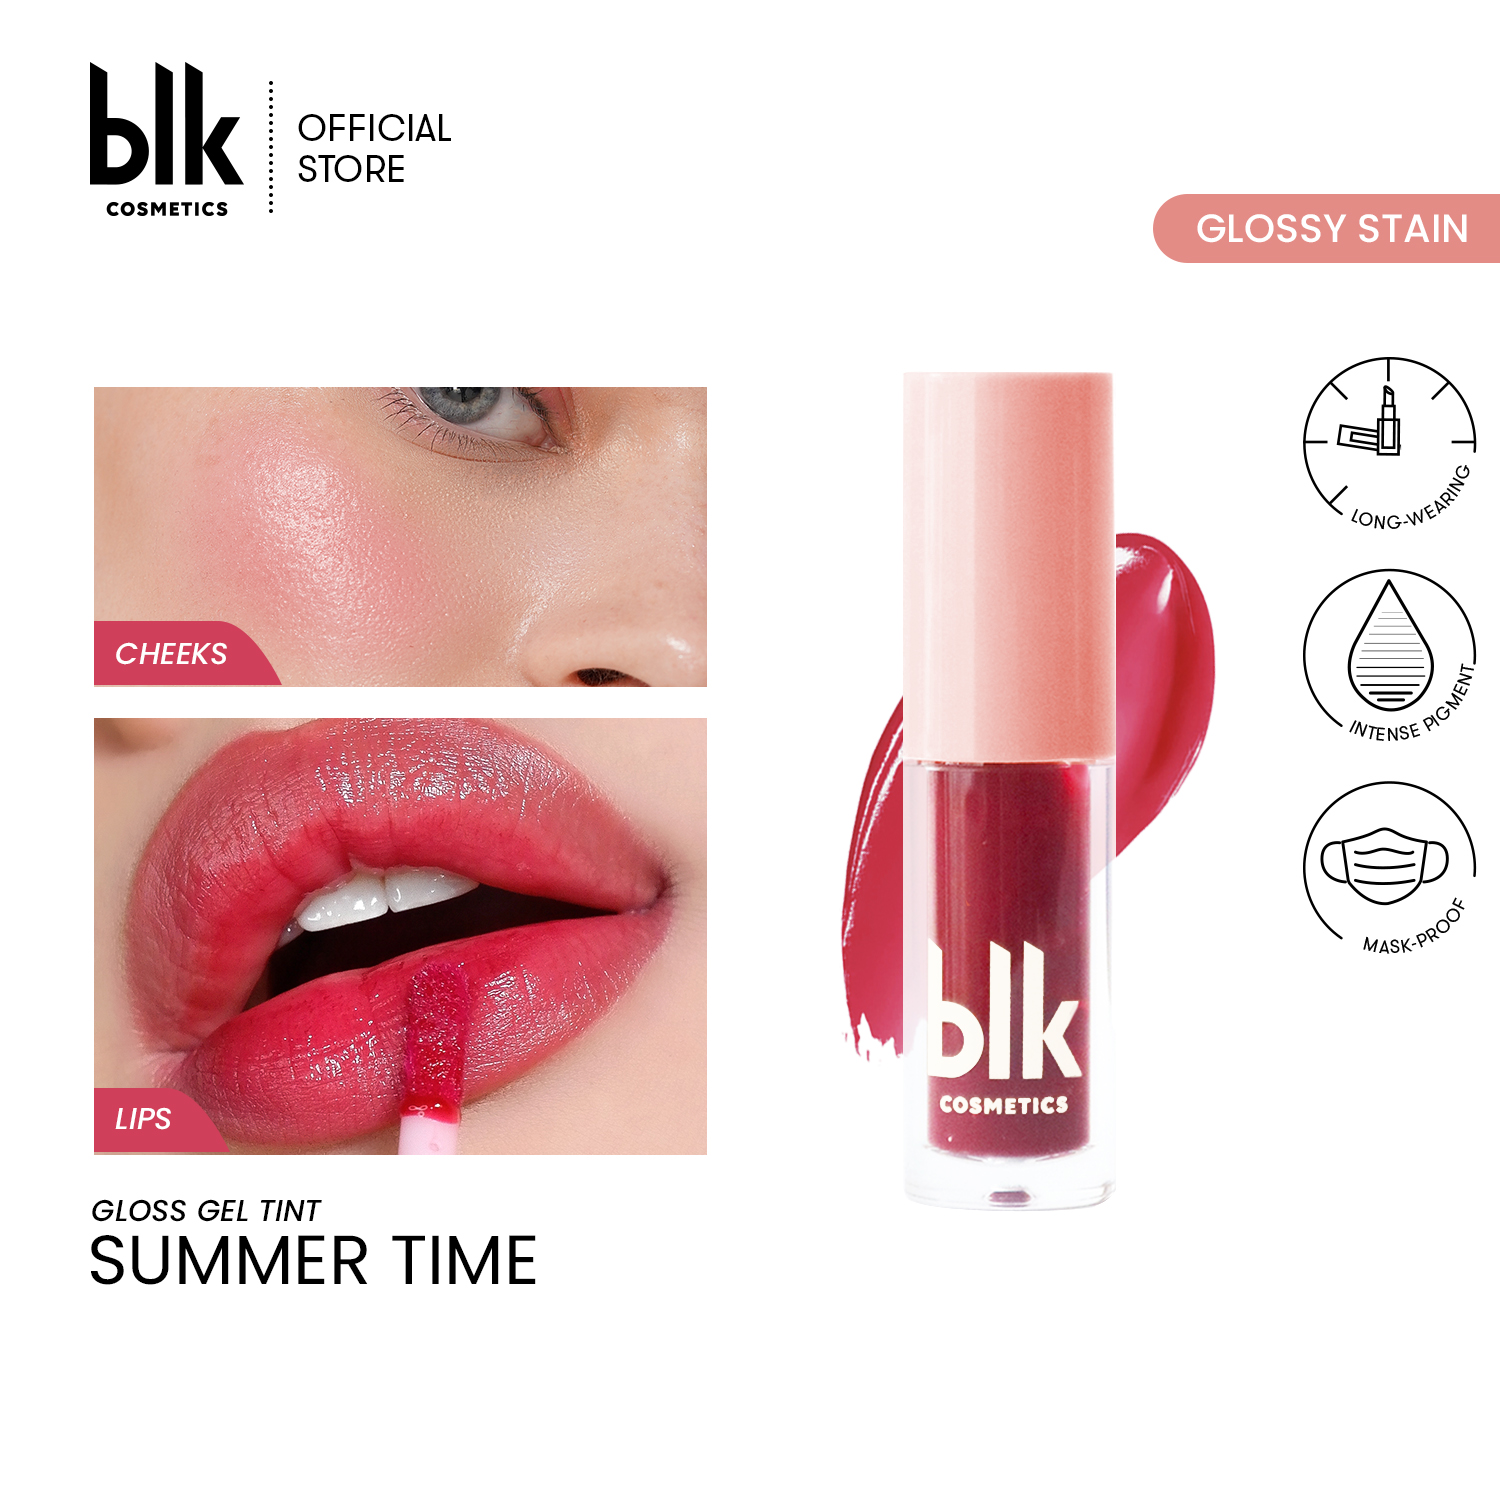 blk cosmetics fresh gloss gel tint summer time